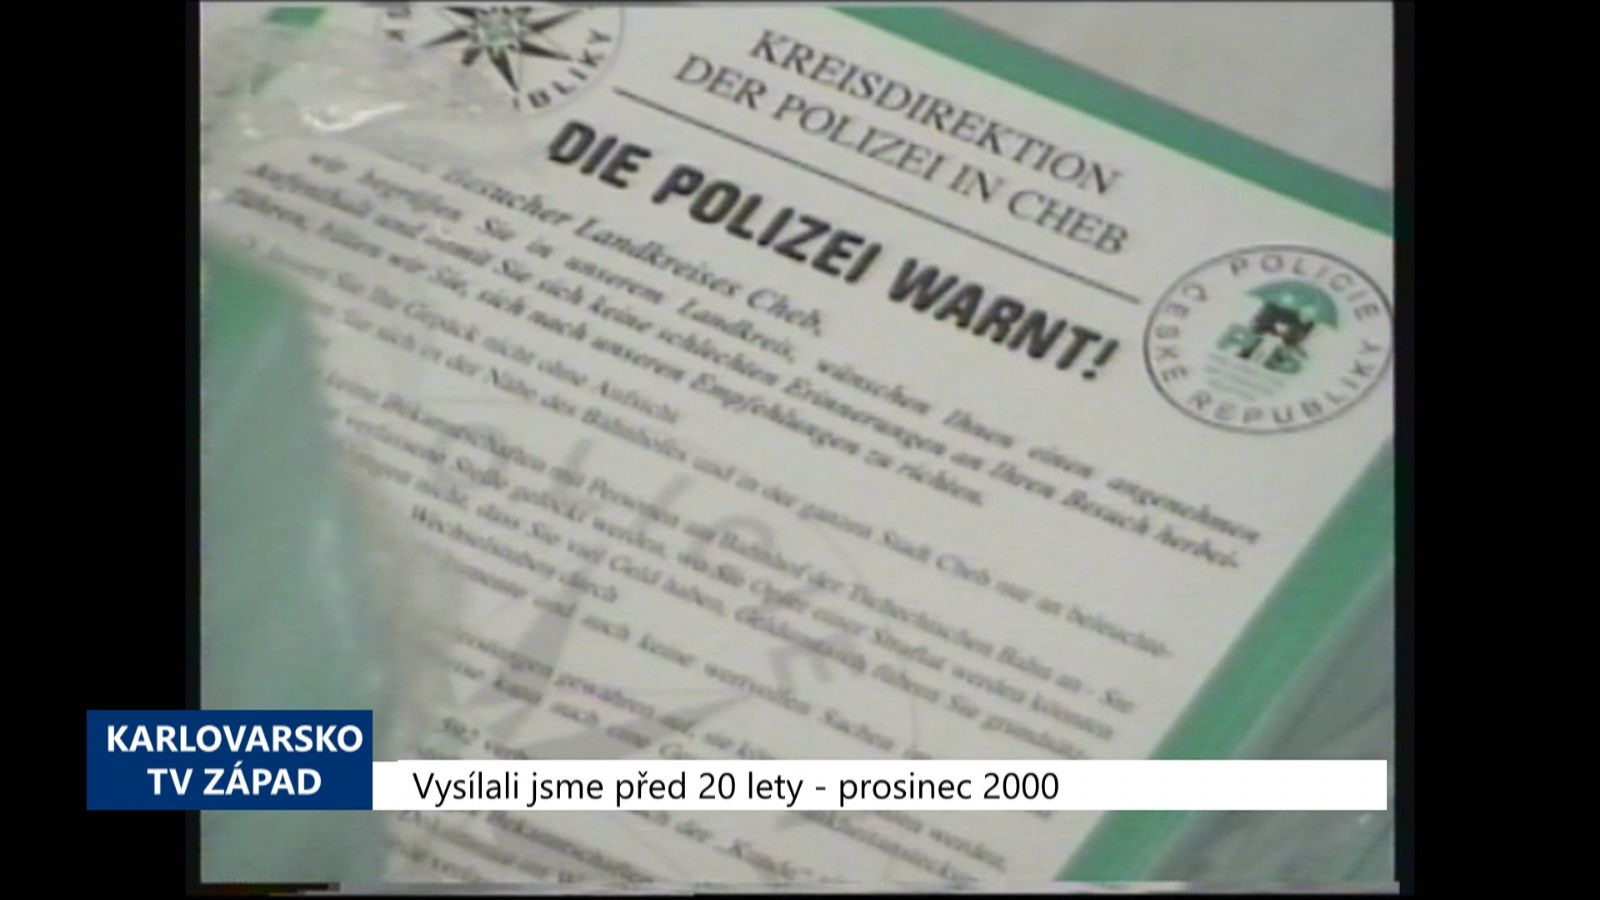 2000 – Chebsko: Letáky varují nejen před kapsáři (TV Západ)